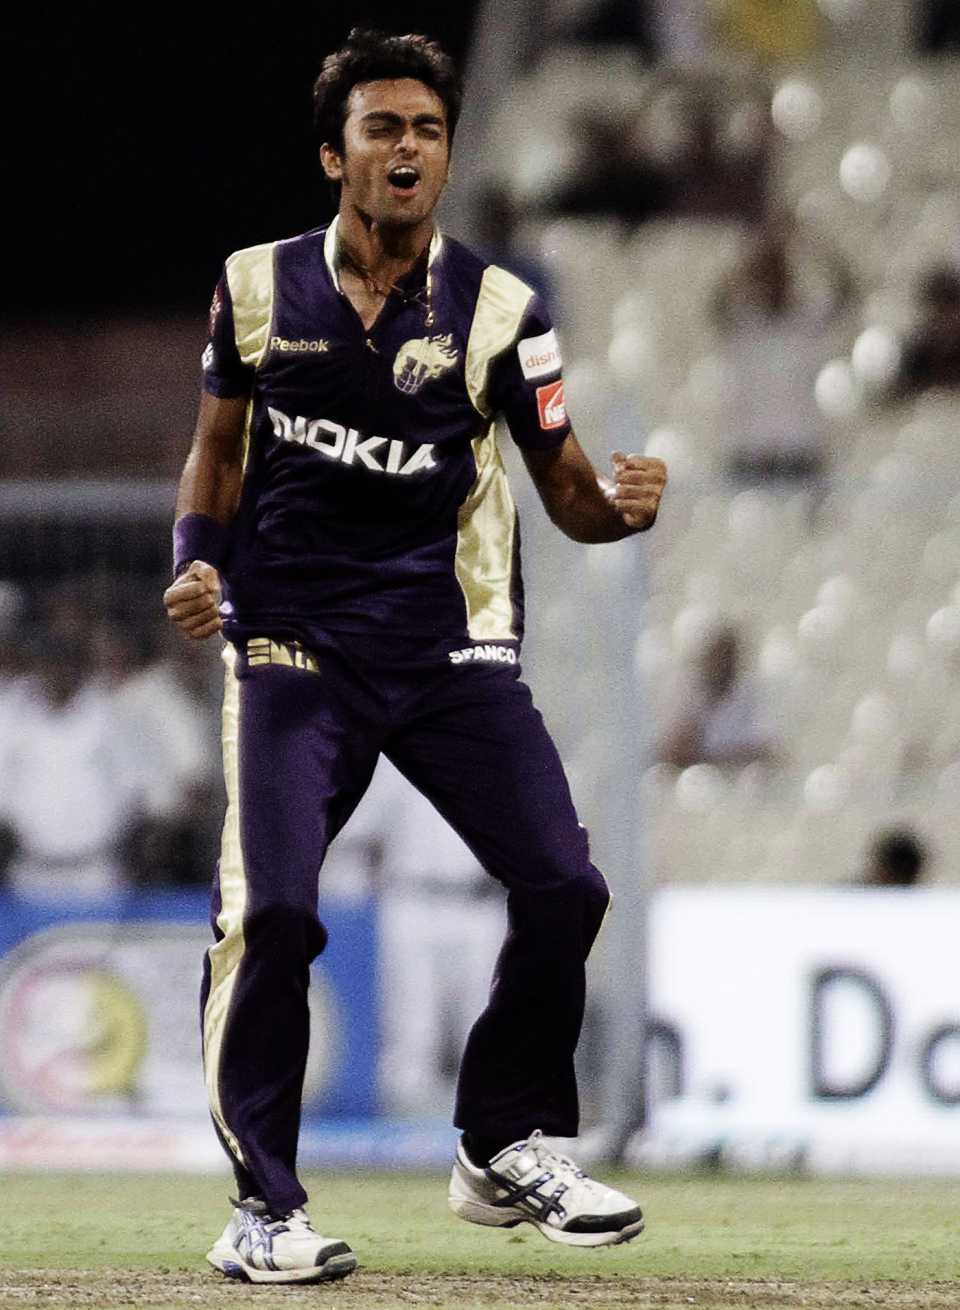 Jaydev Unadkat celebrates a wicket, Kolkata Knight Riders v Deccan Chargers, IPL 2011, Kolkata, April 11, 2011